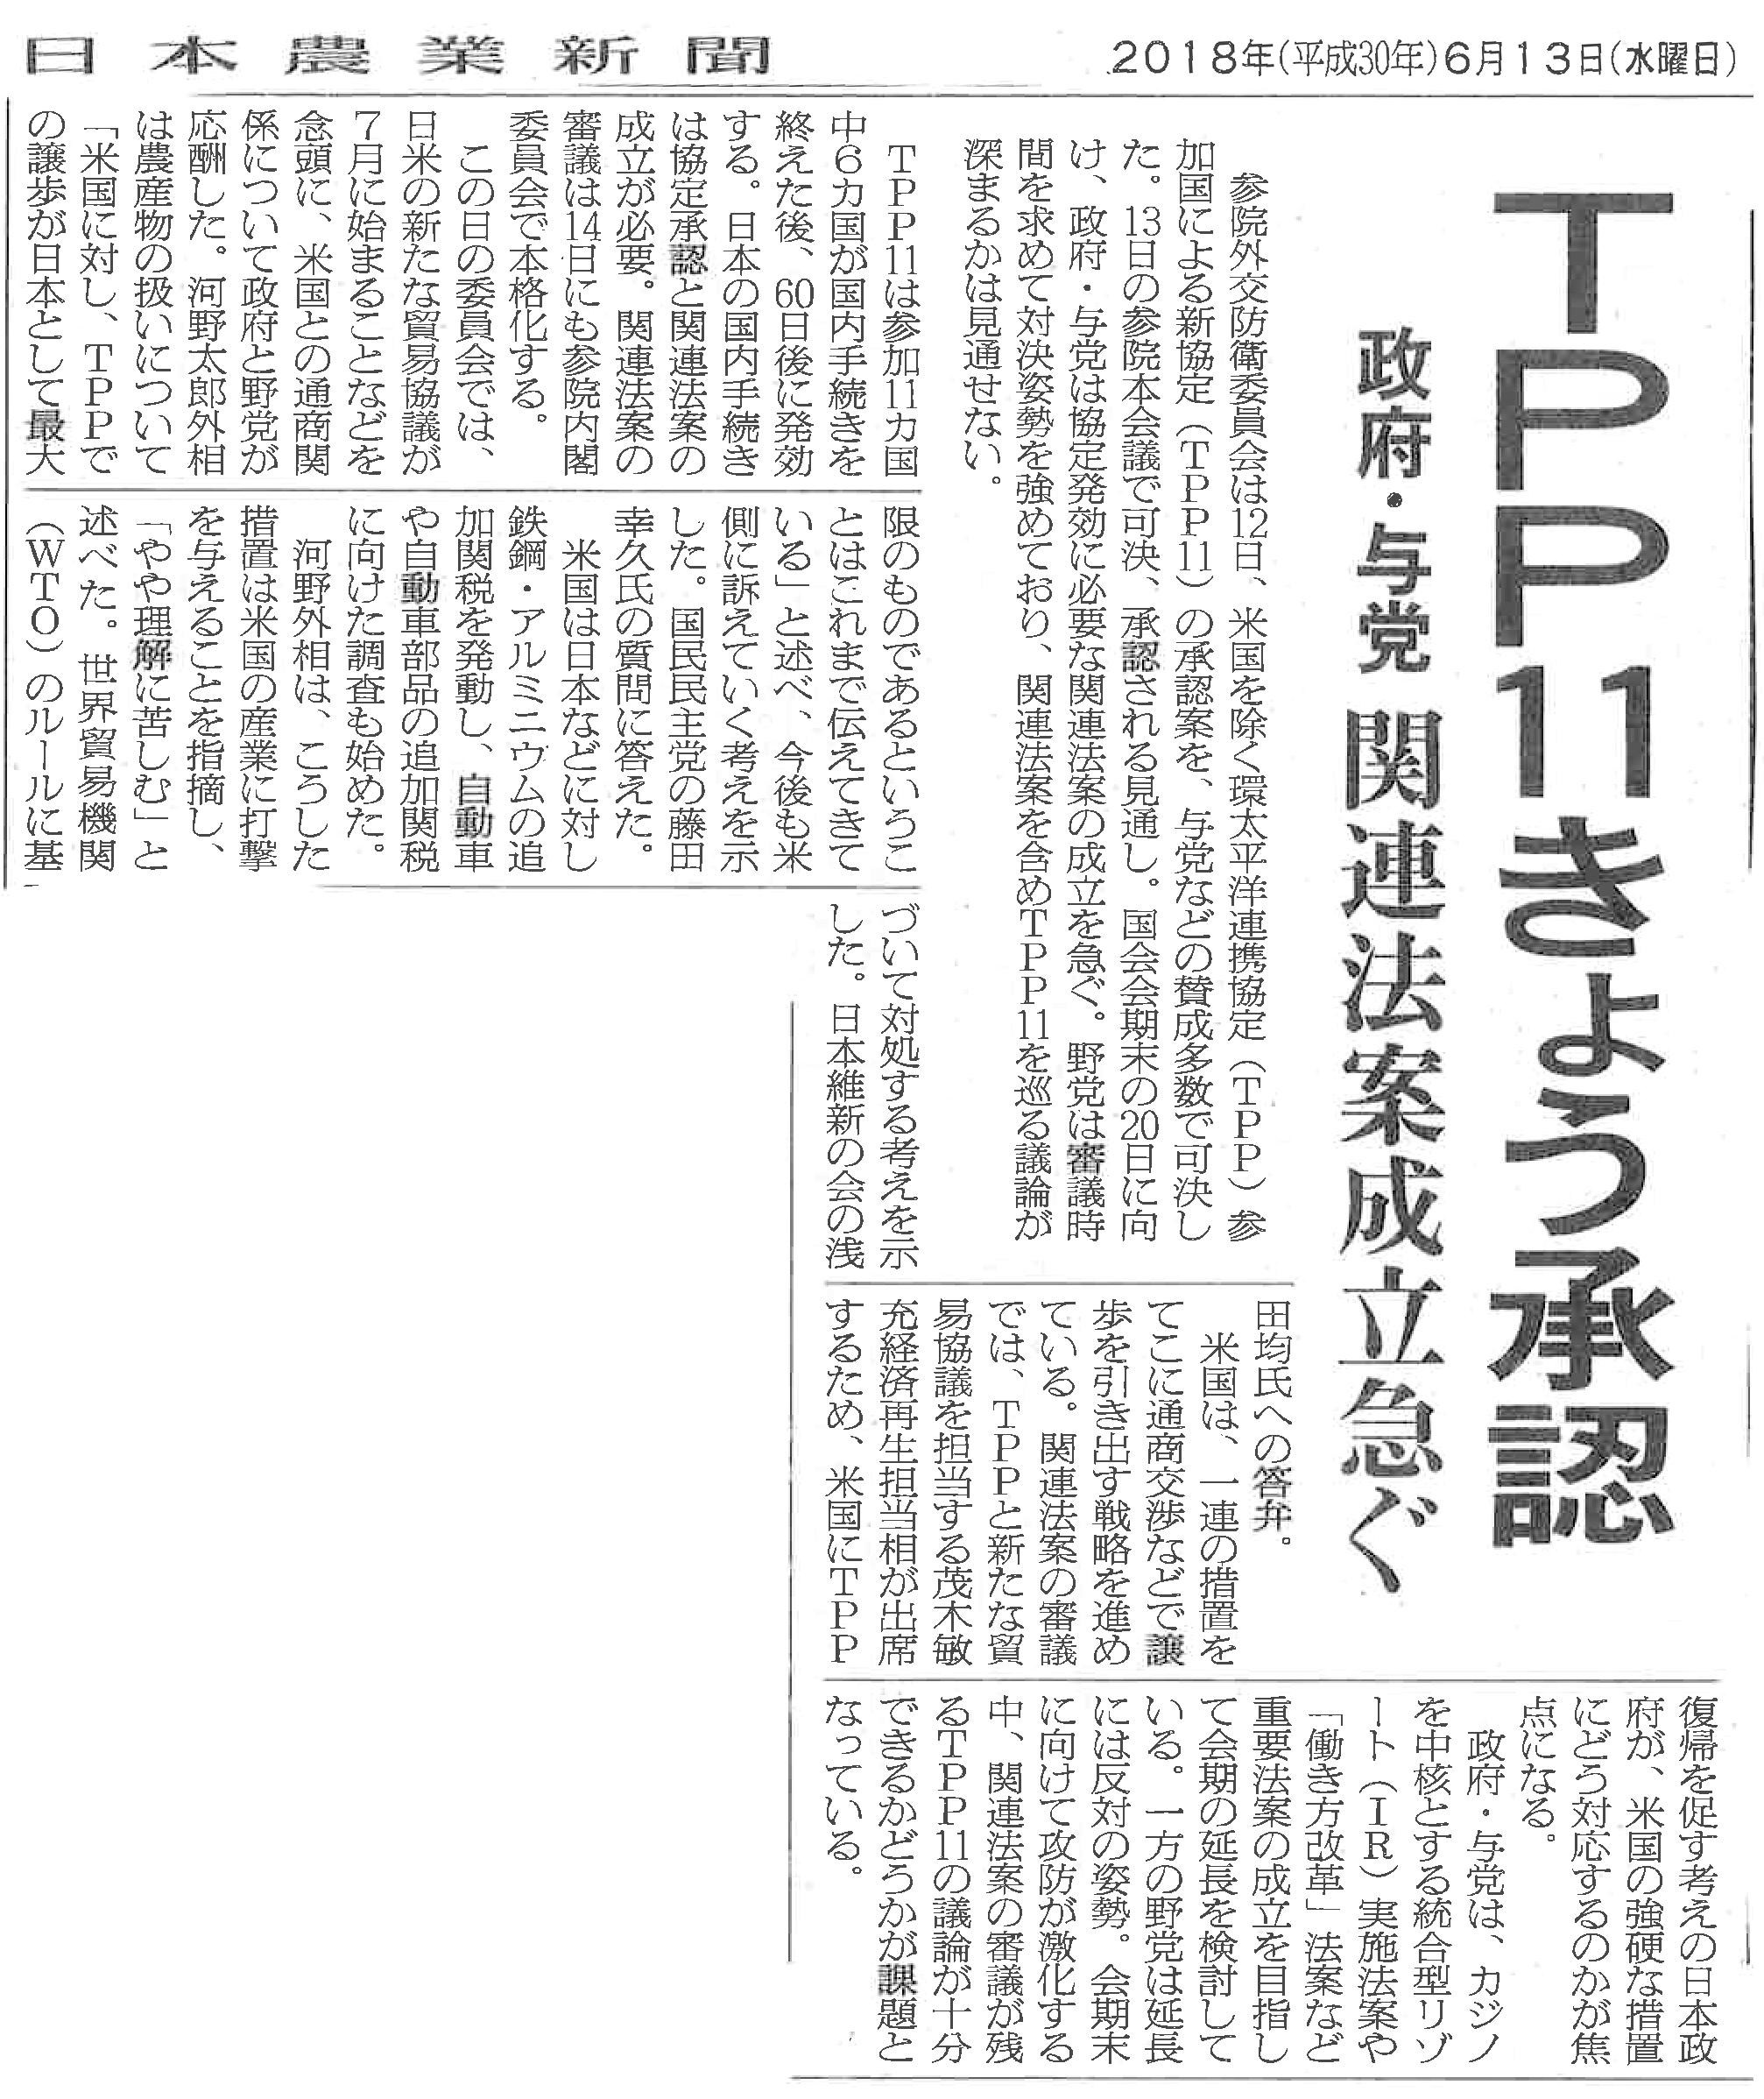 【日本農業新聞】TPP11きょう承認　政府・与党関連法案成立急ぐ